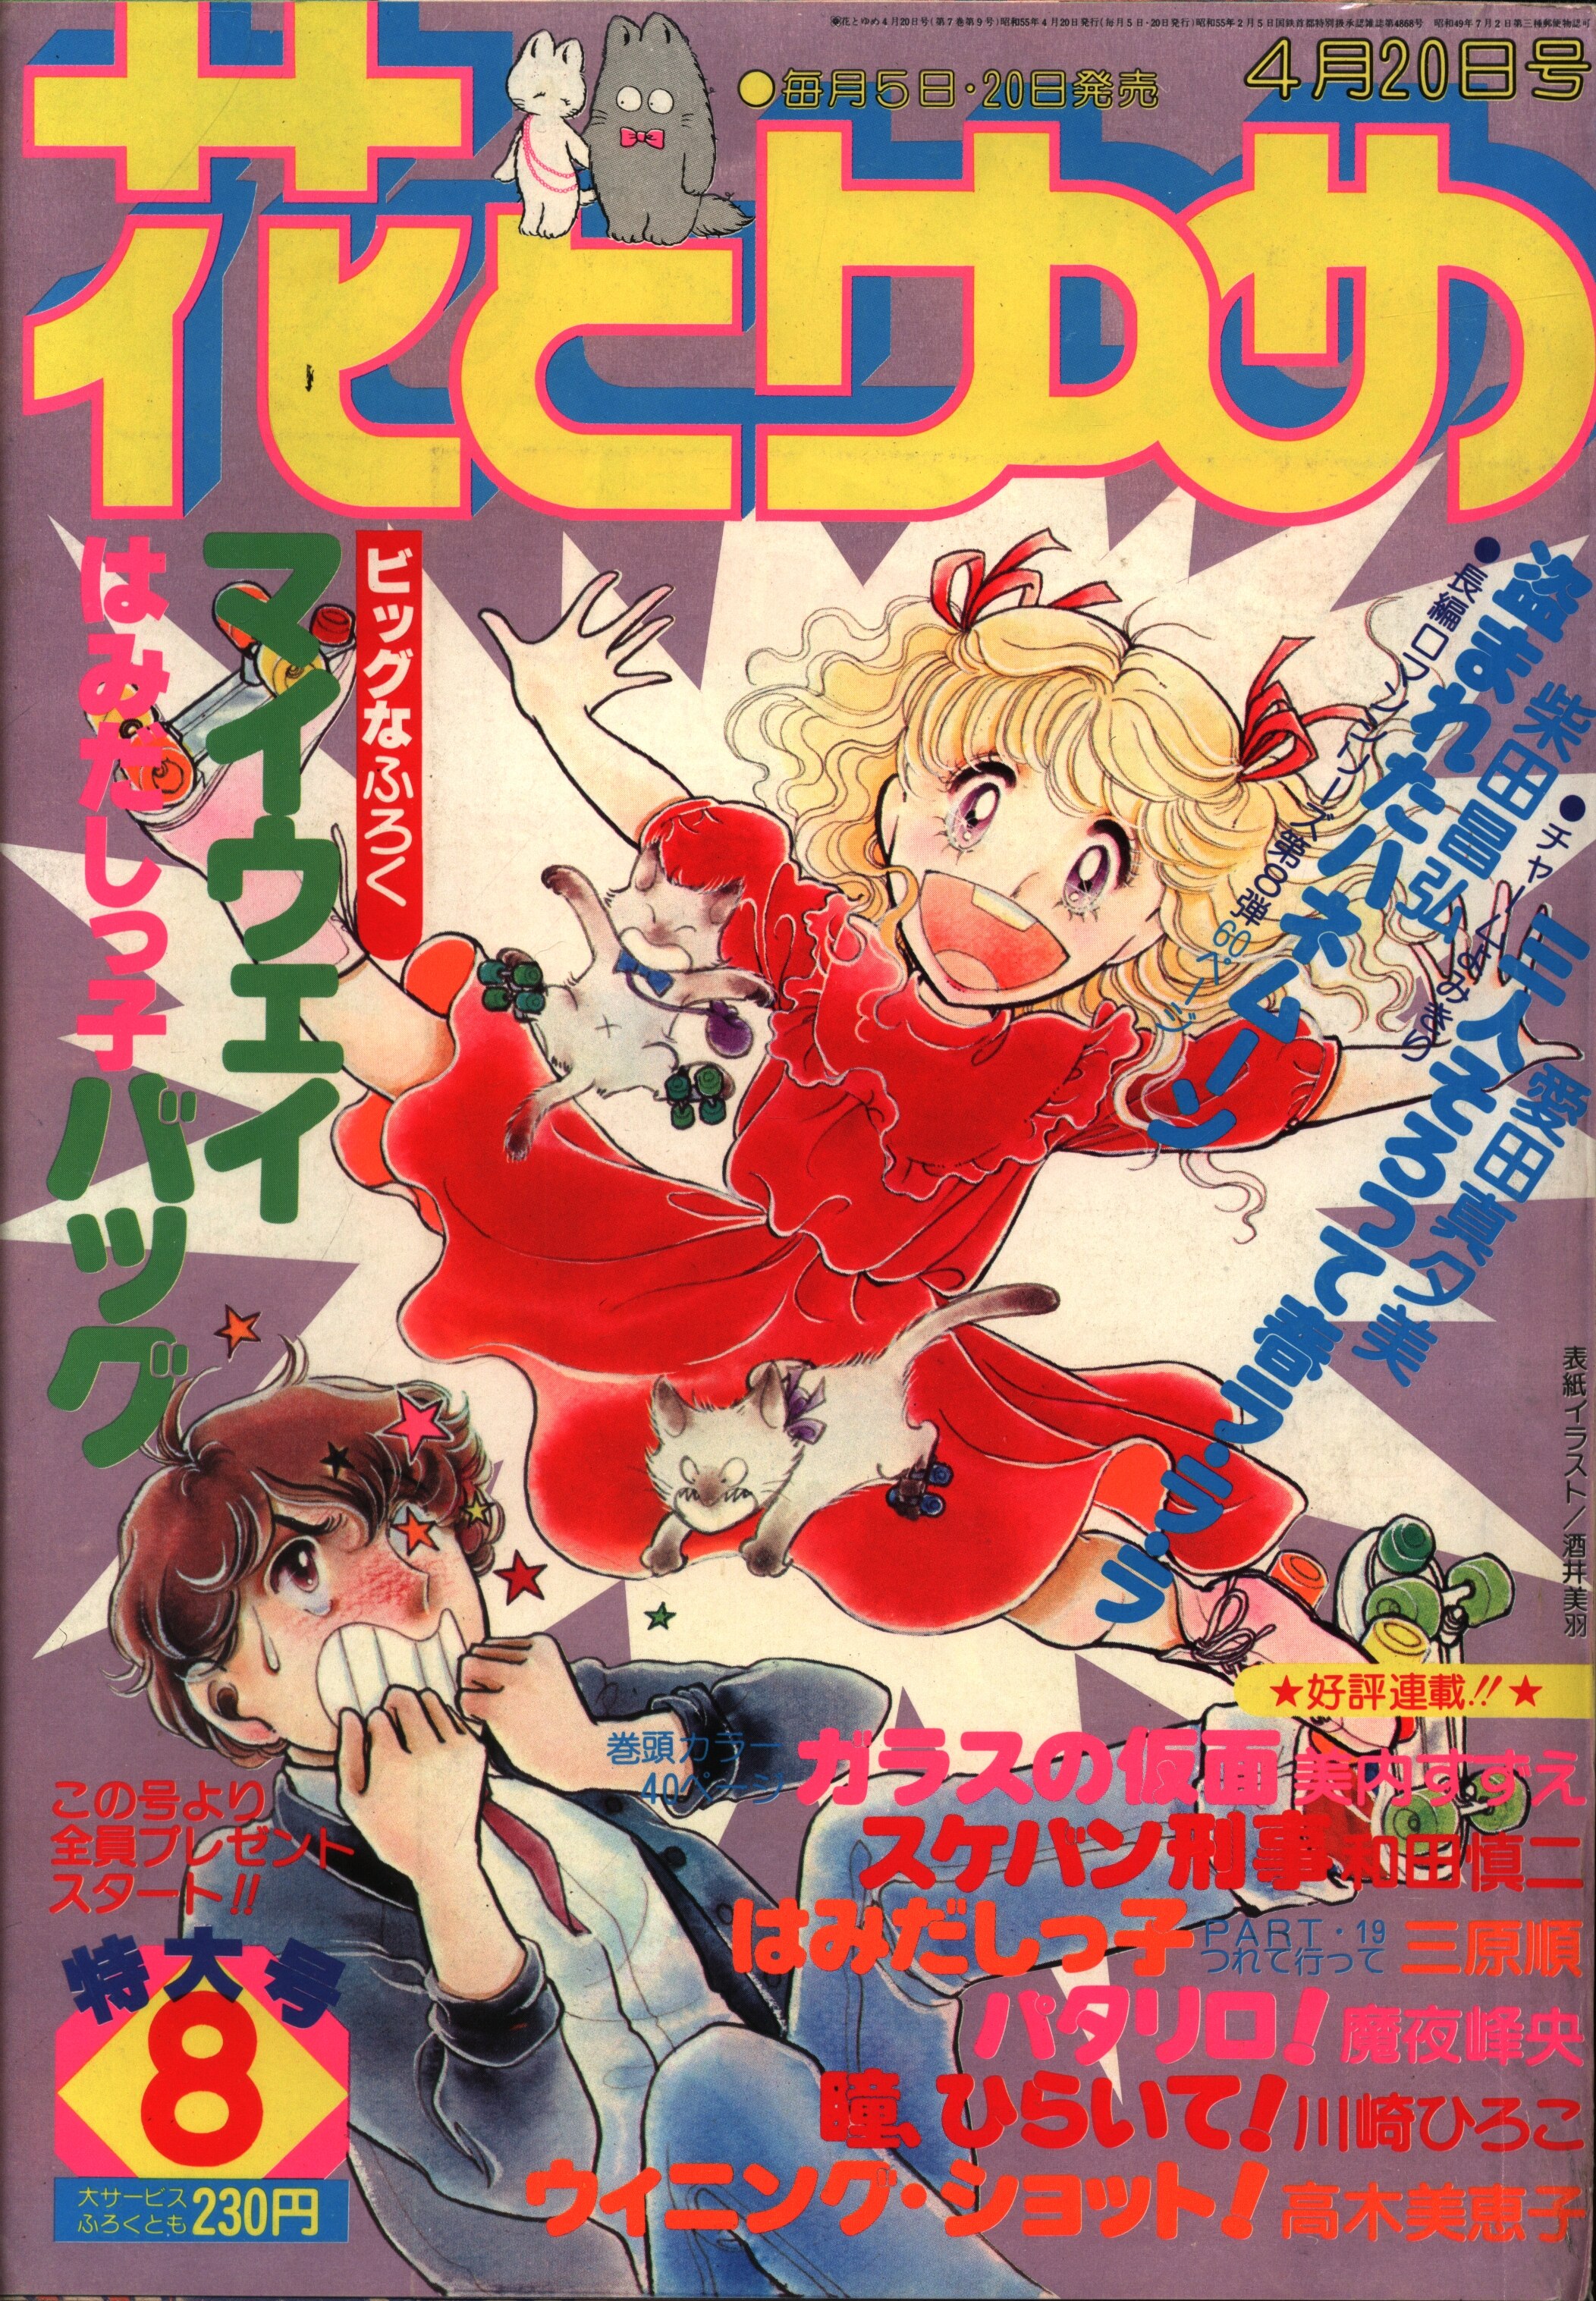 白泉社 1980年(昭和55年)の漫画雑誌 花とゆめ1980年(昭和55年)08号 ...